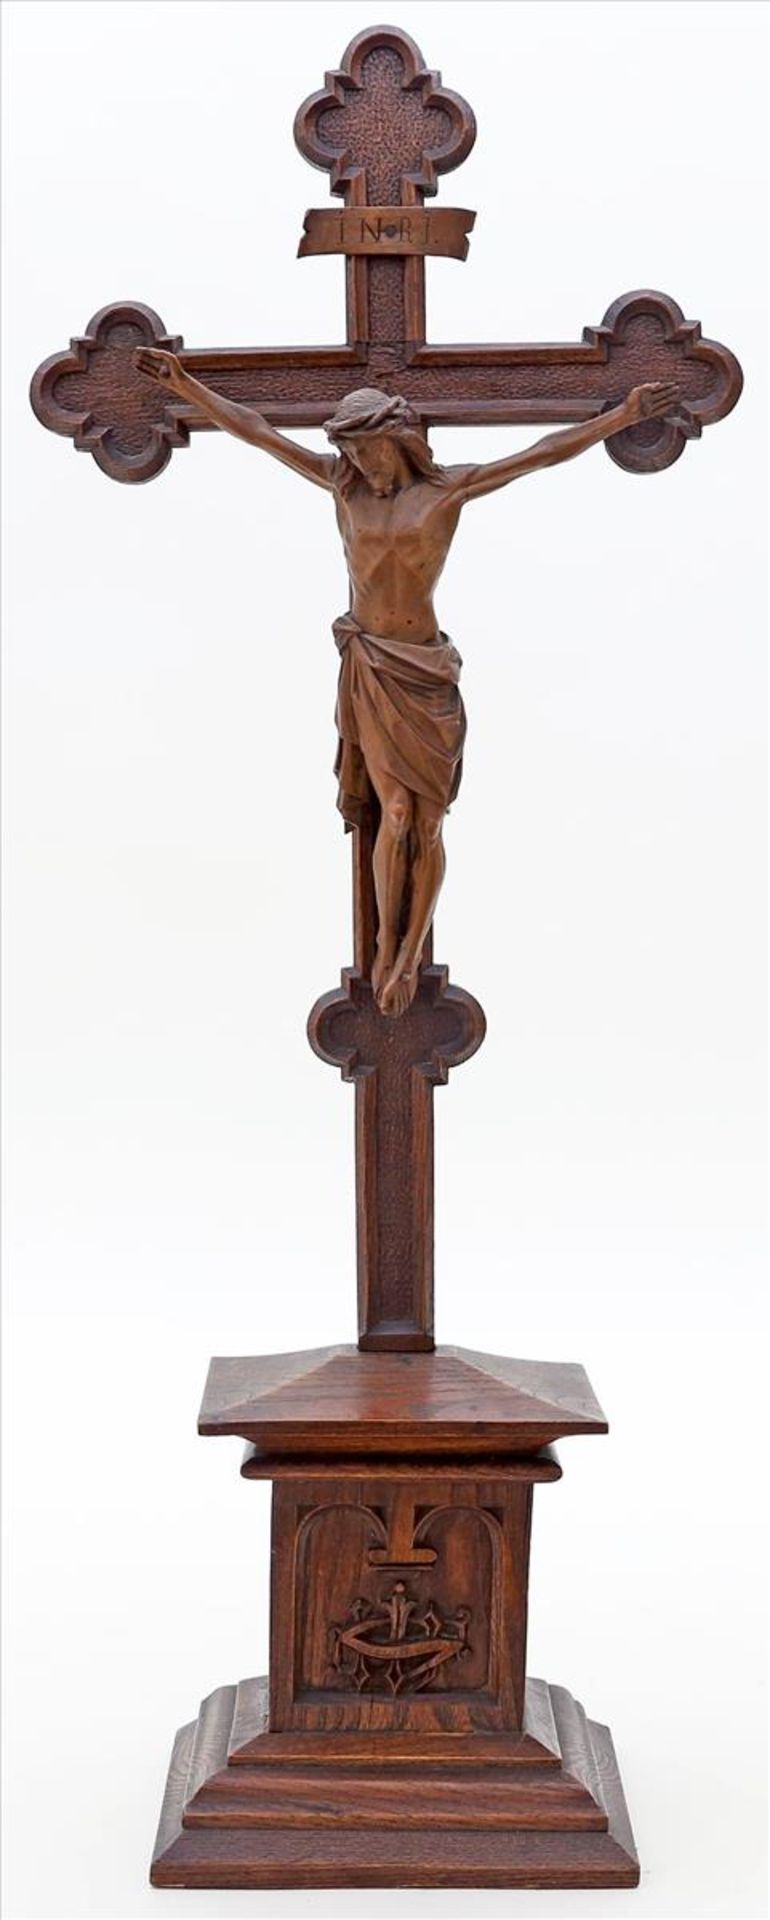 Standkruzifix.Eiche, braun gebeizt. Geschnitzter Christus an detailiert gearbeitetem Kreuz und mit